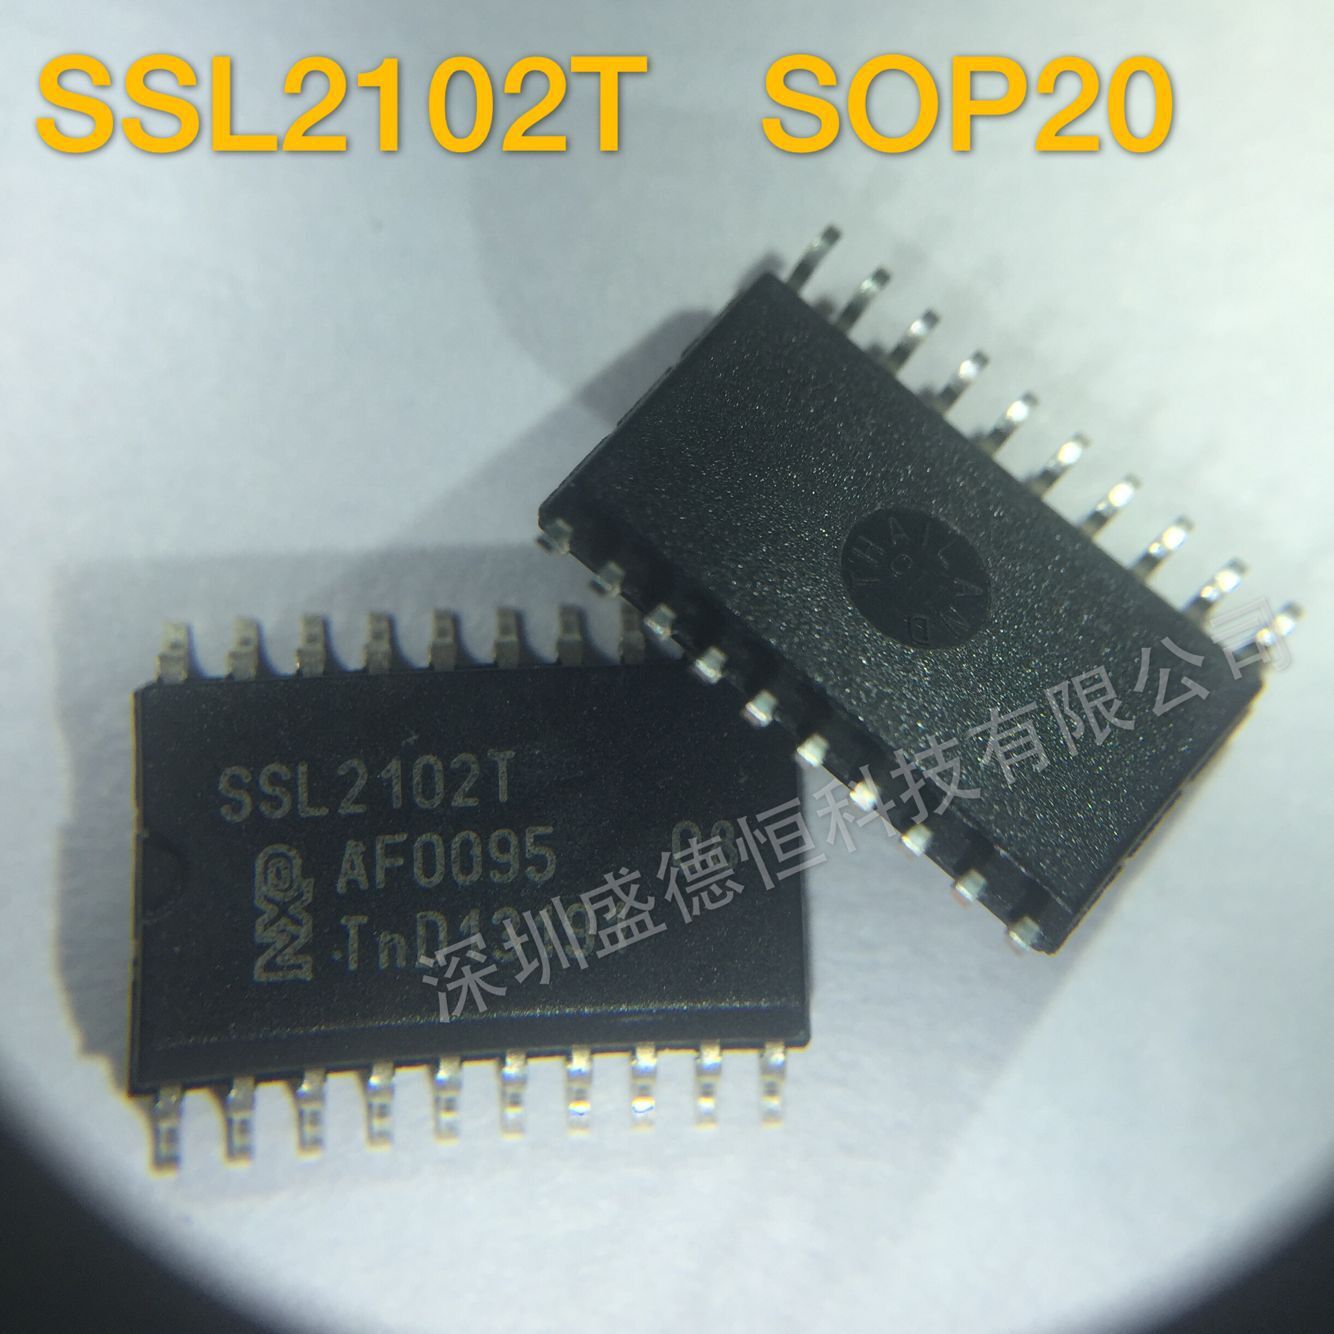 SSL2102T SOP20全新原装LED调光驱动芯片 特价热卖